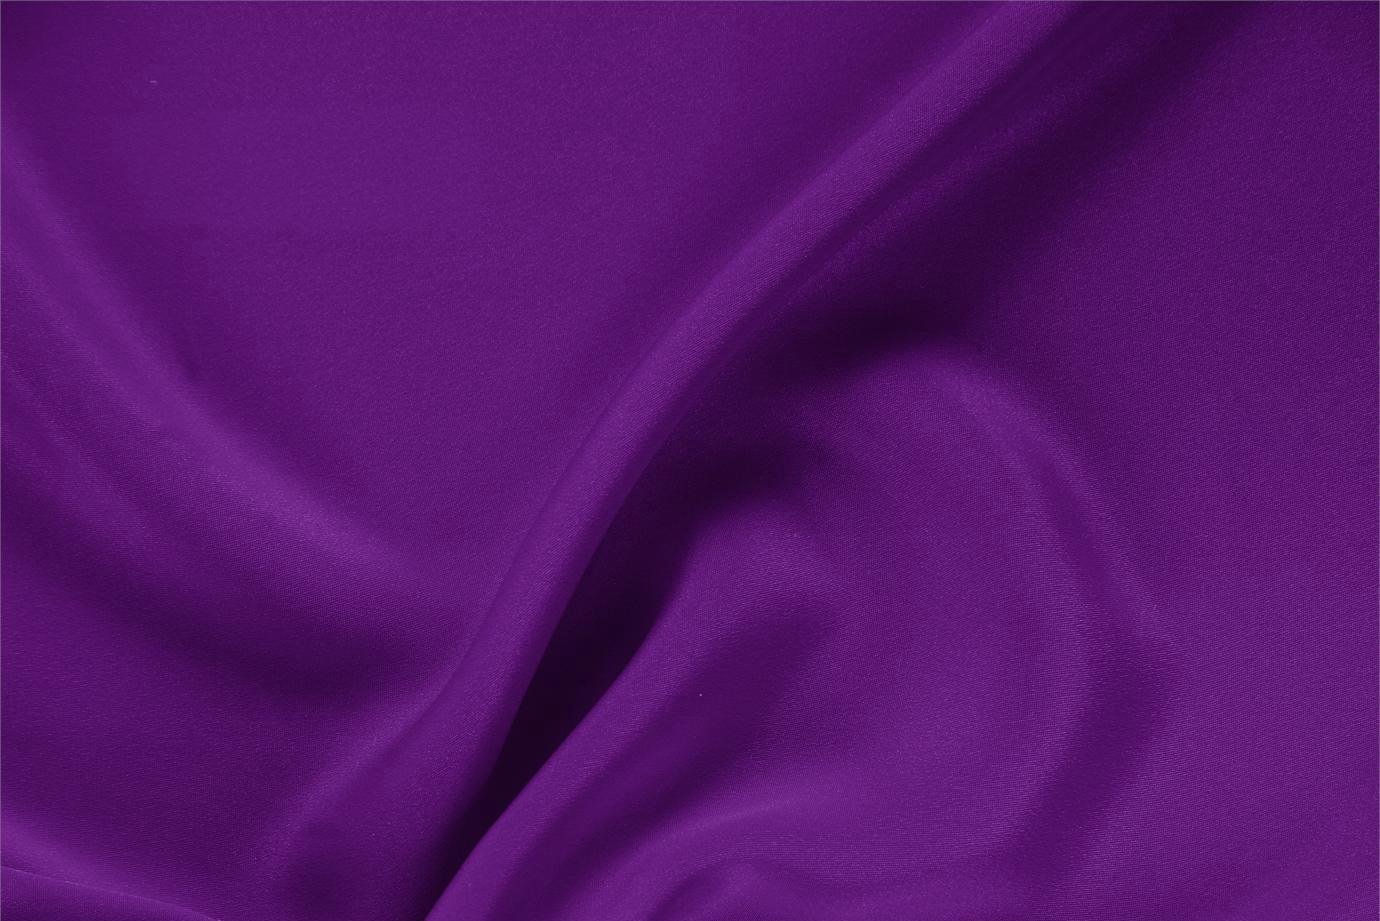 Tissu Drap Violet myrtille en Soie pour vêtements